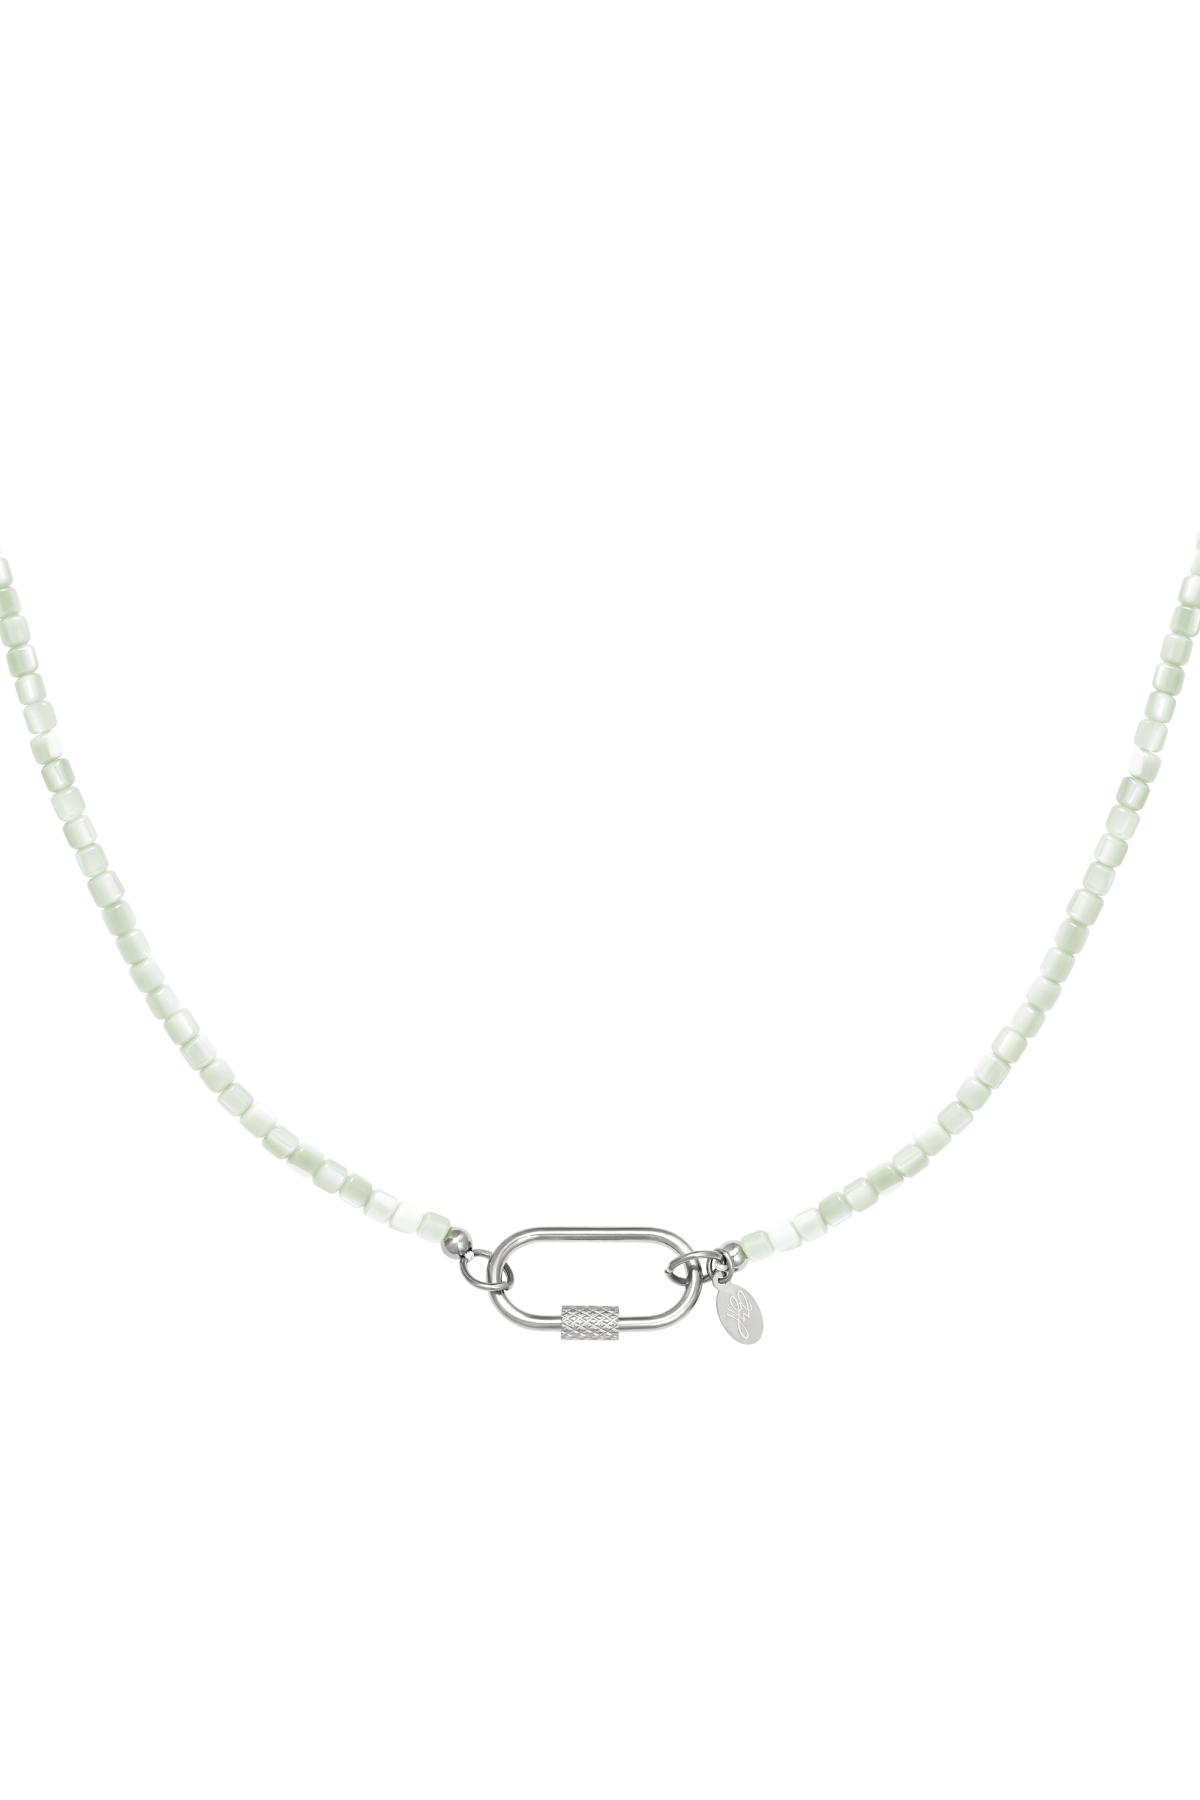 Bunte Halskette mit ovalem Verschluss Grün Edelstahl